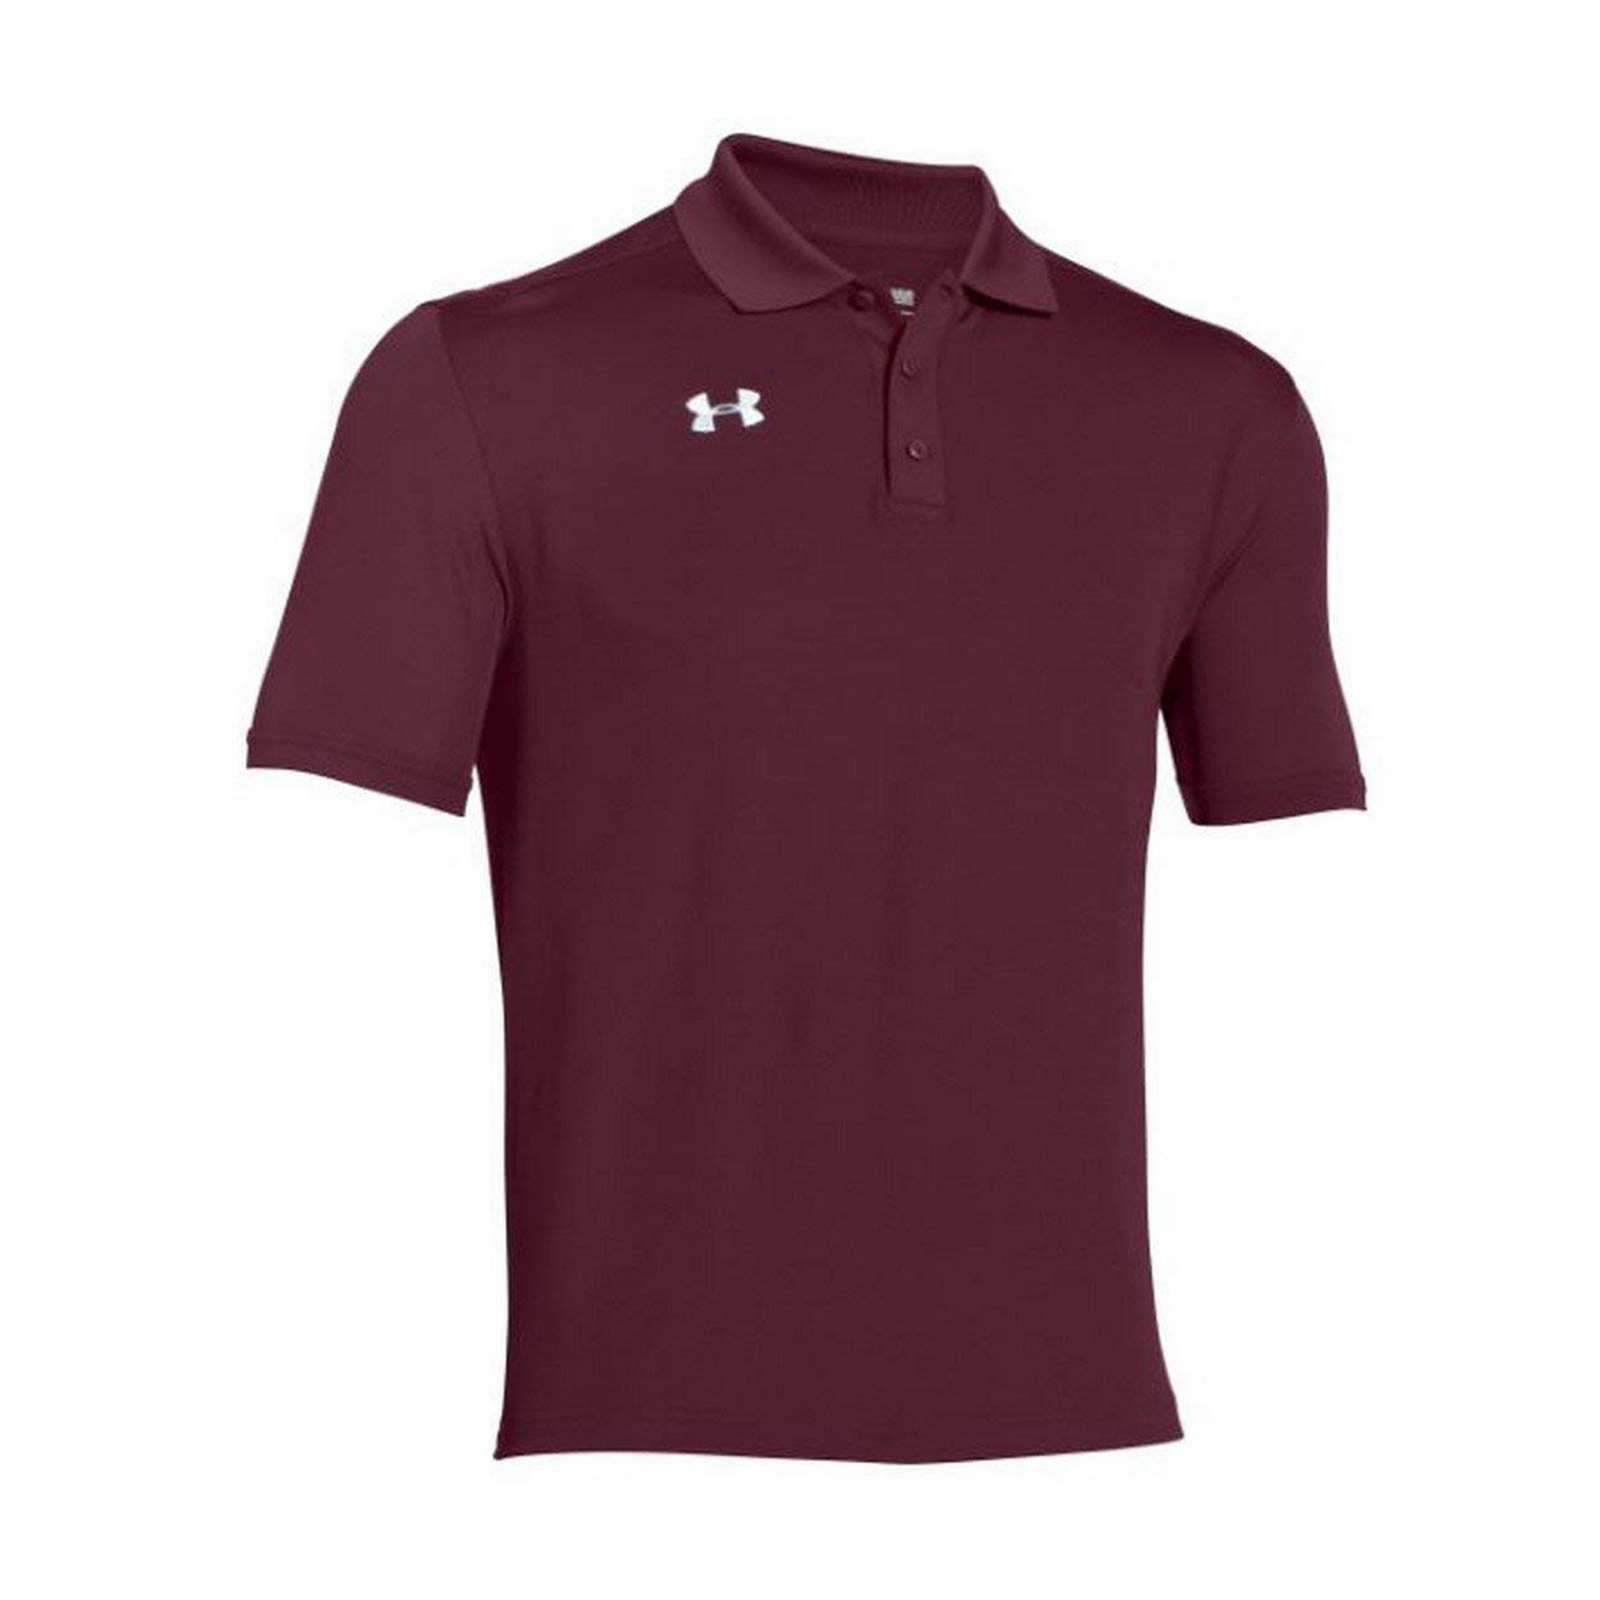 Under Armour Men's UA Team Armour Golf Polo T-Shirt - Walmart.com